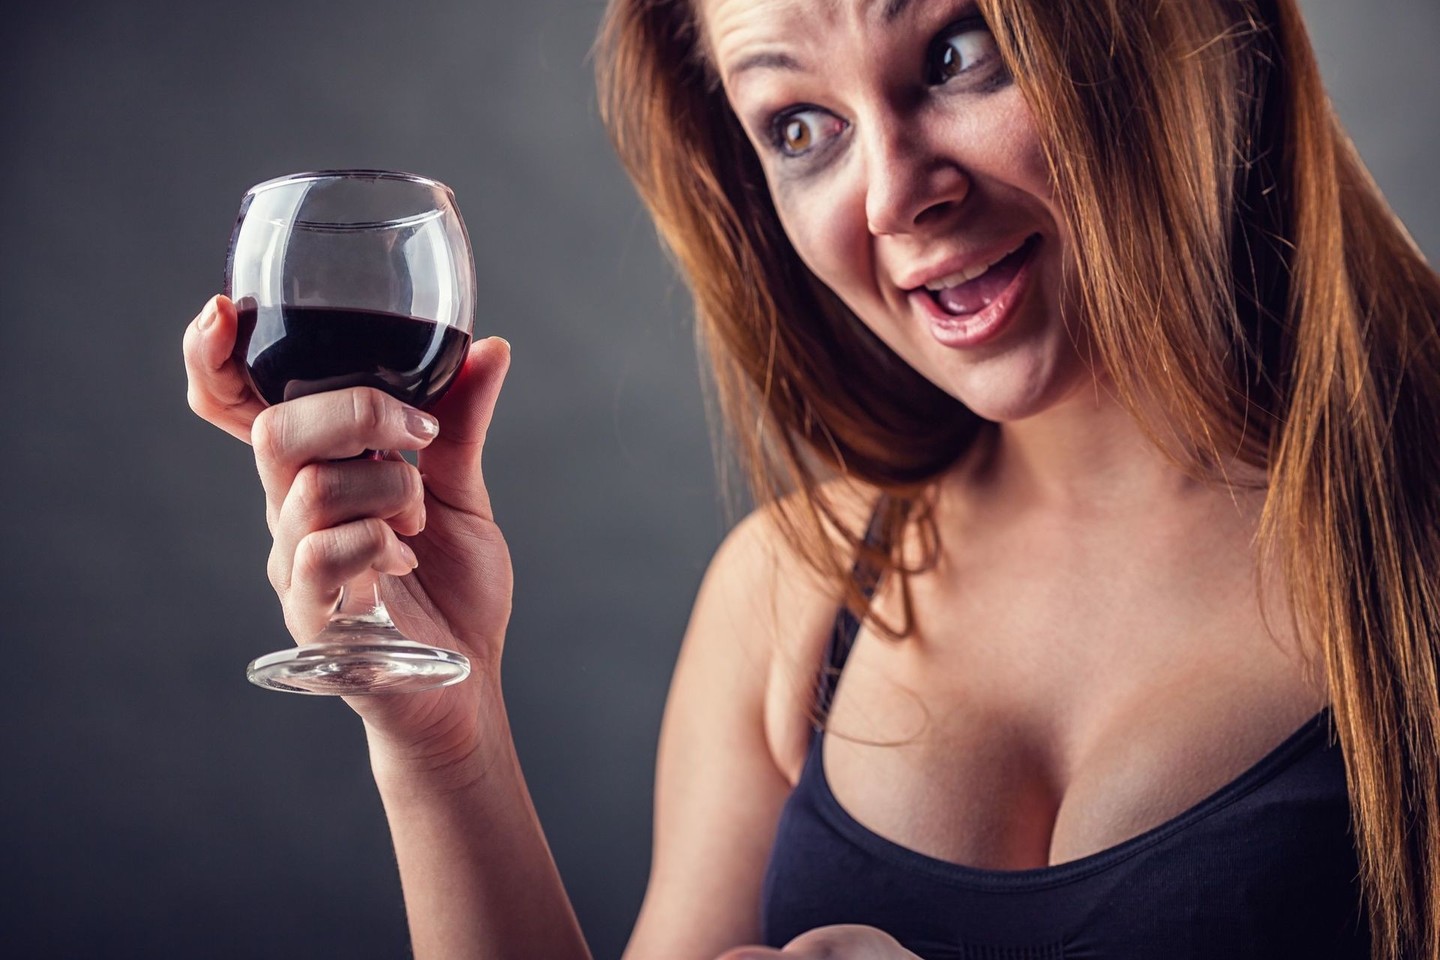 Moterims verta žinoti faktus apie charakterio ir alkoholio ryšį – tai gali padėti išsiaiškinti apie save tam tikrus dalykus.<br>123rf nuotr.